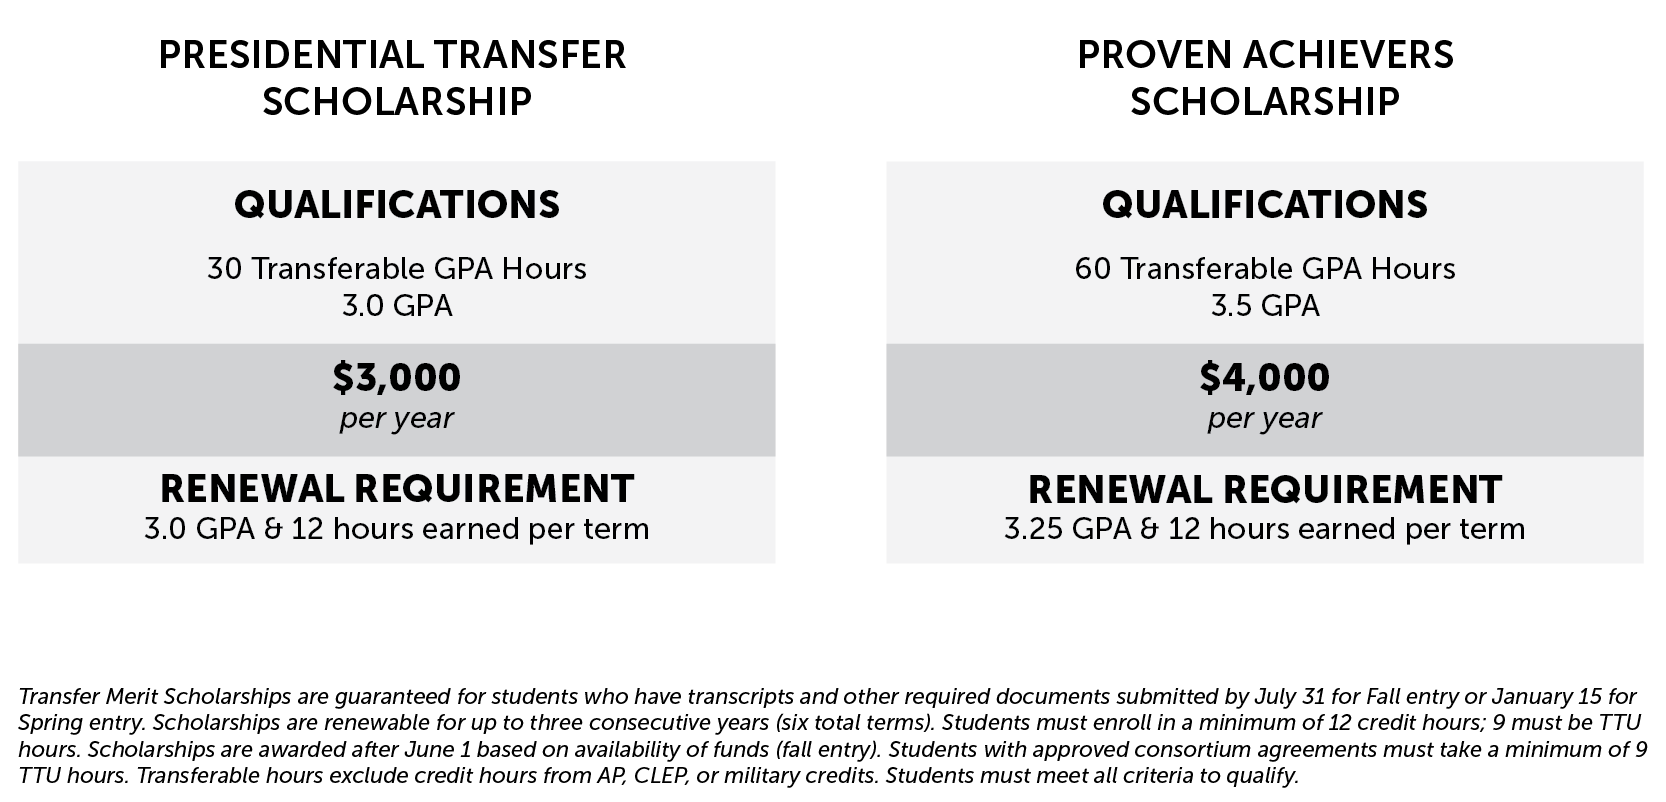 Transfer Merit Scholarships